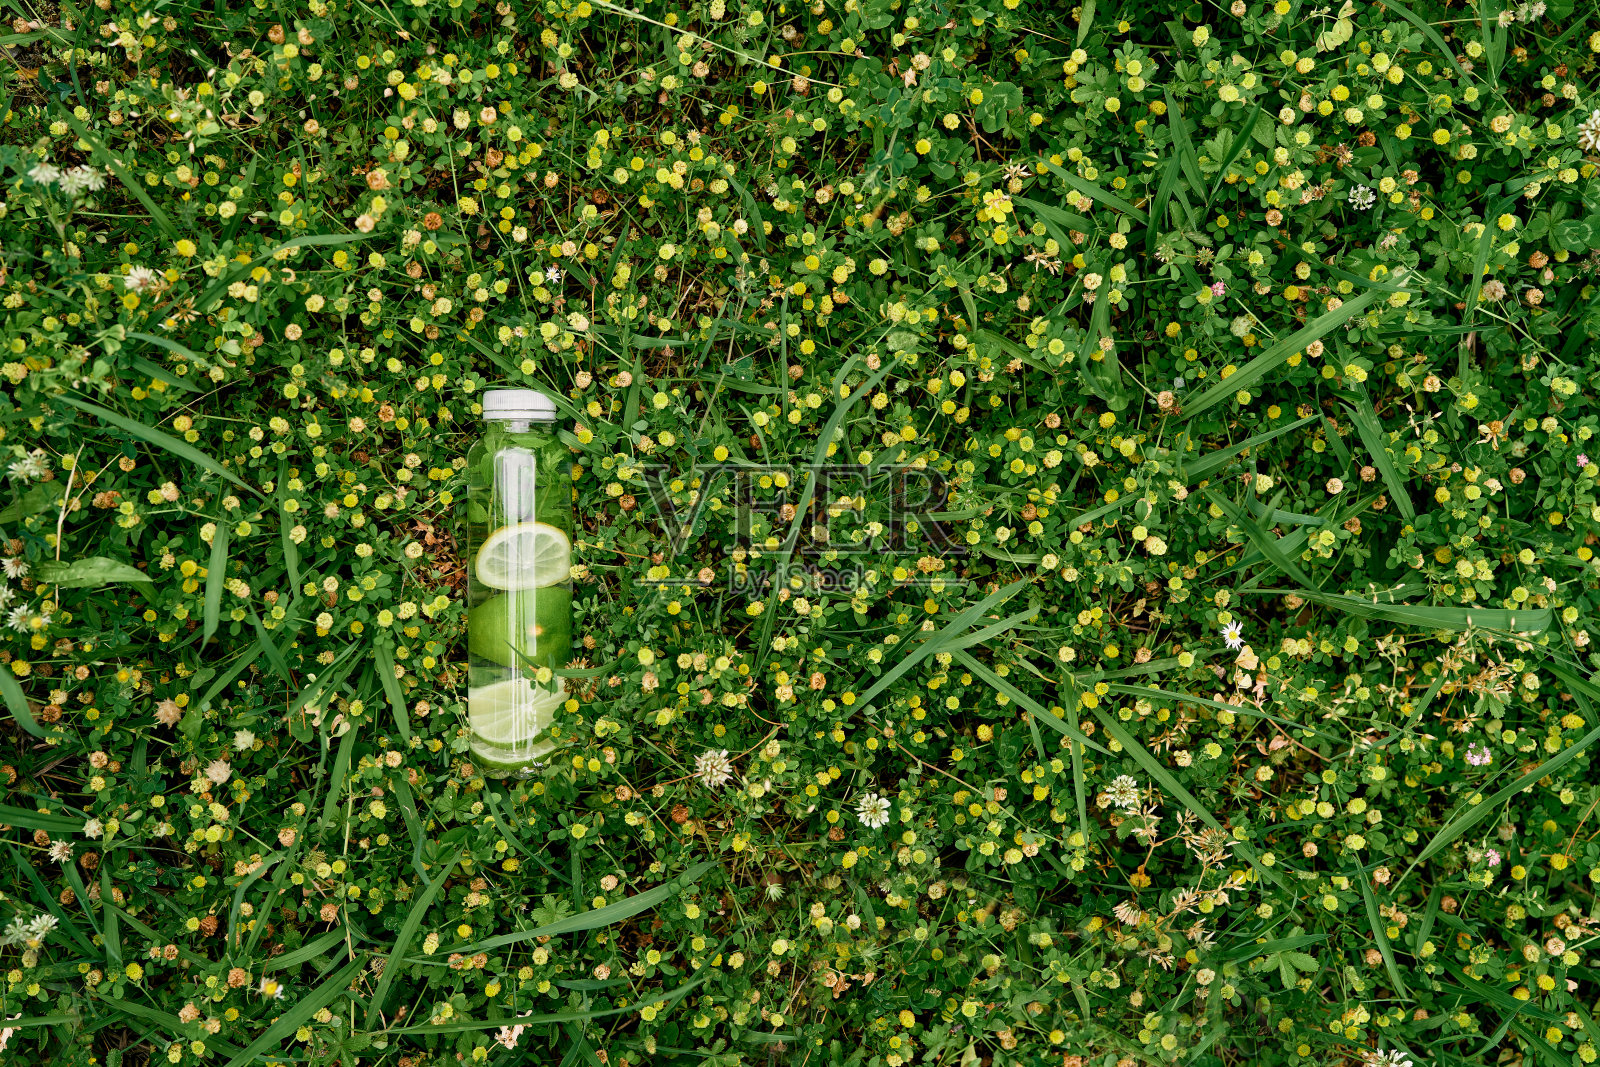 一瓶柠檬水躺在黄色的野花中间的绿色草坪上照片摄影图片